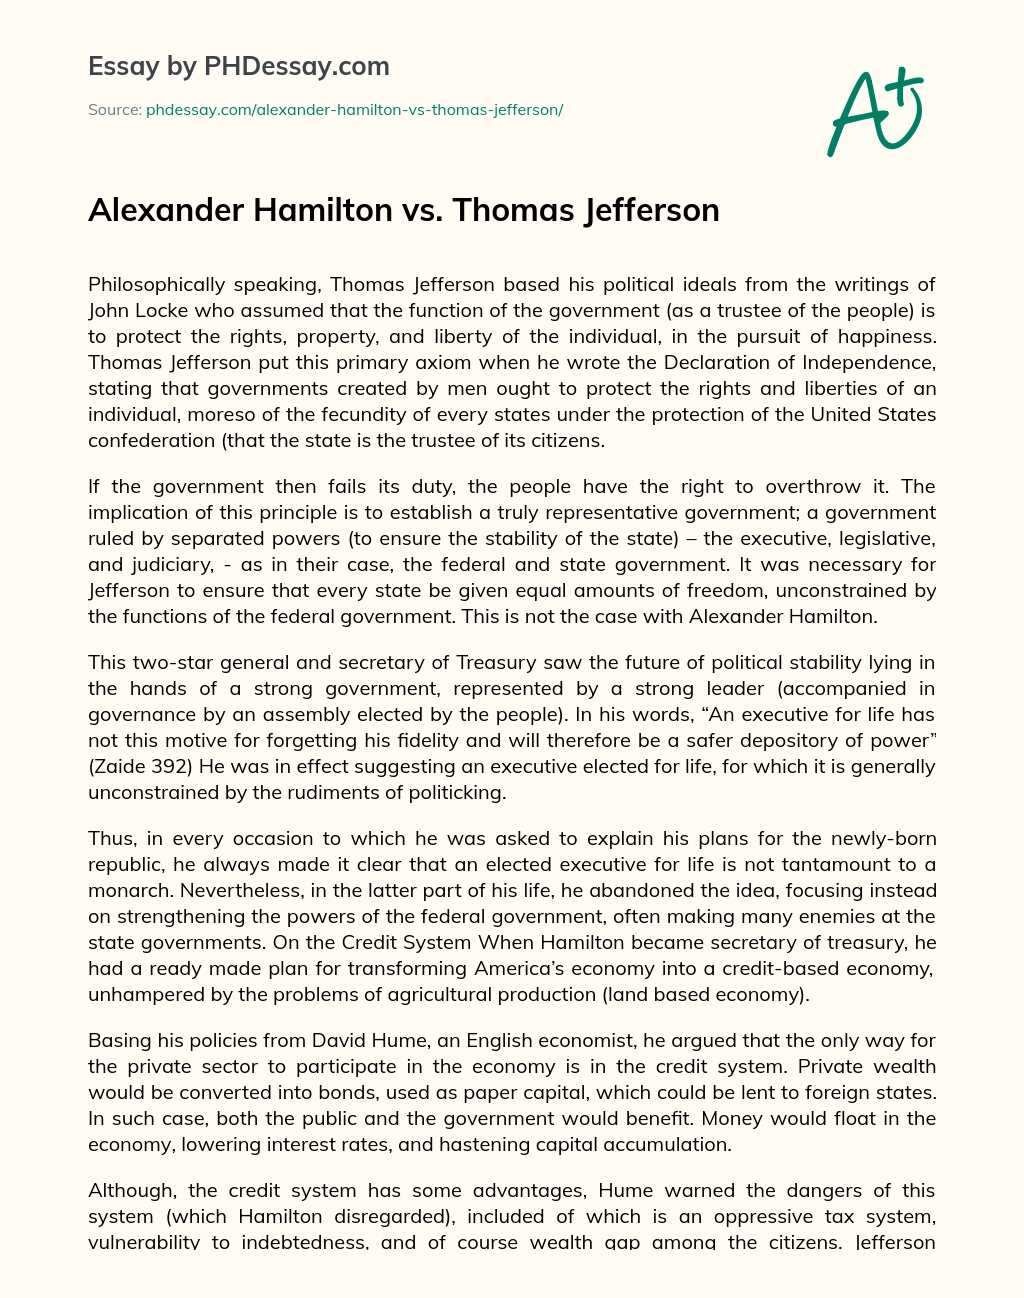 Alexander Hamilton vs. Thomas Jefferson essay